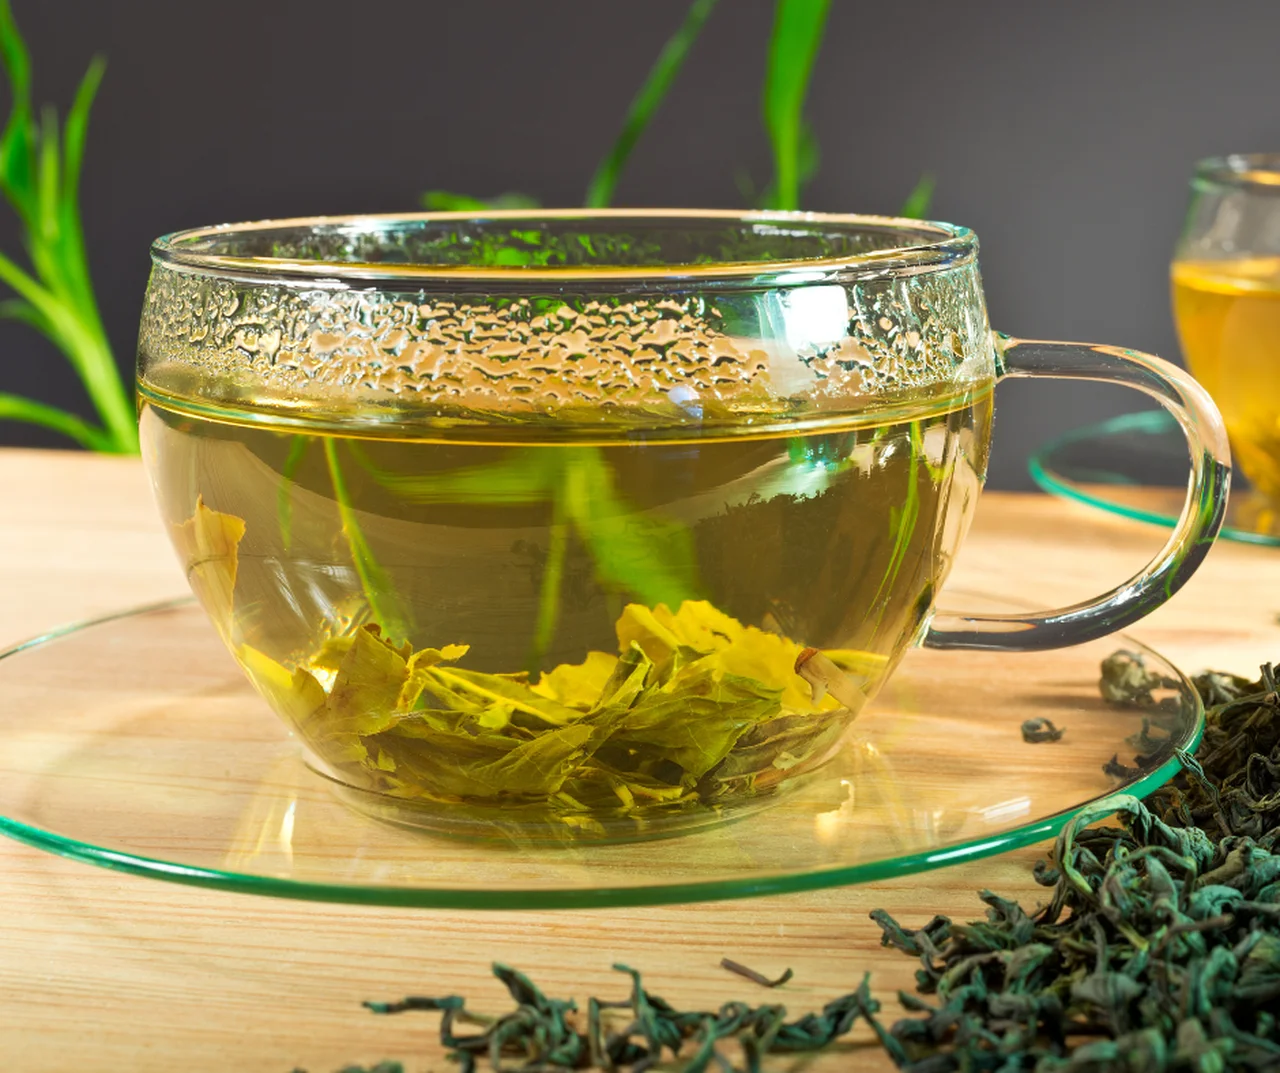 Czy dziecko może pić zieloną herbatę? Zaskakujące fakty, które każdy rodzic powinien znać!